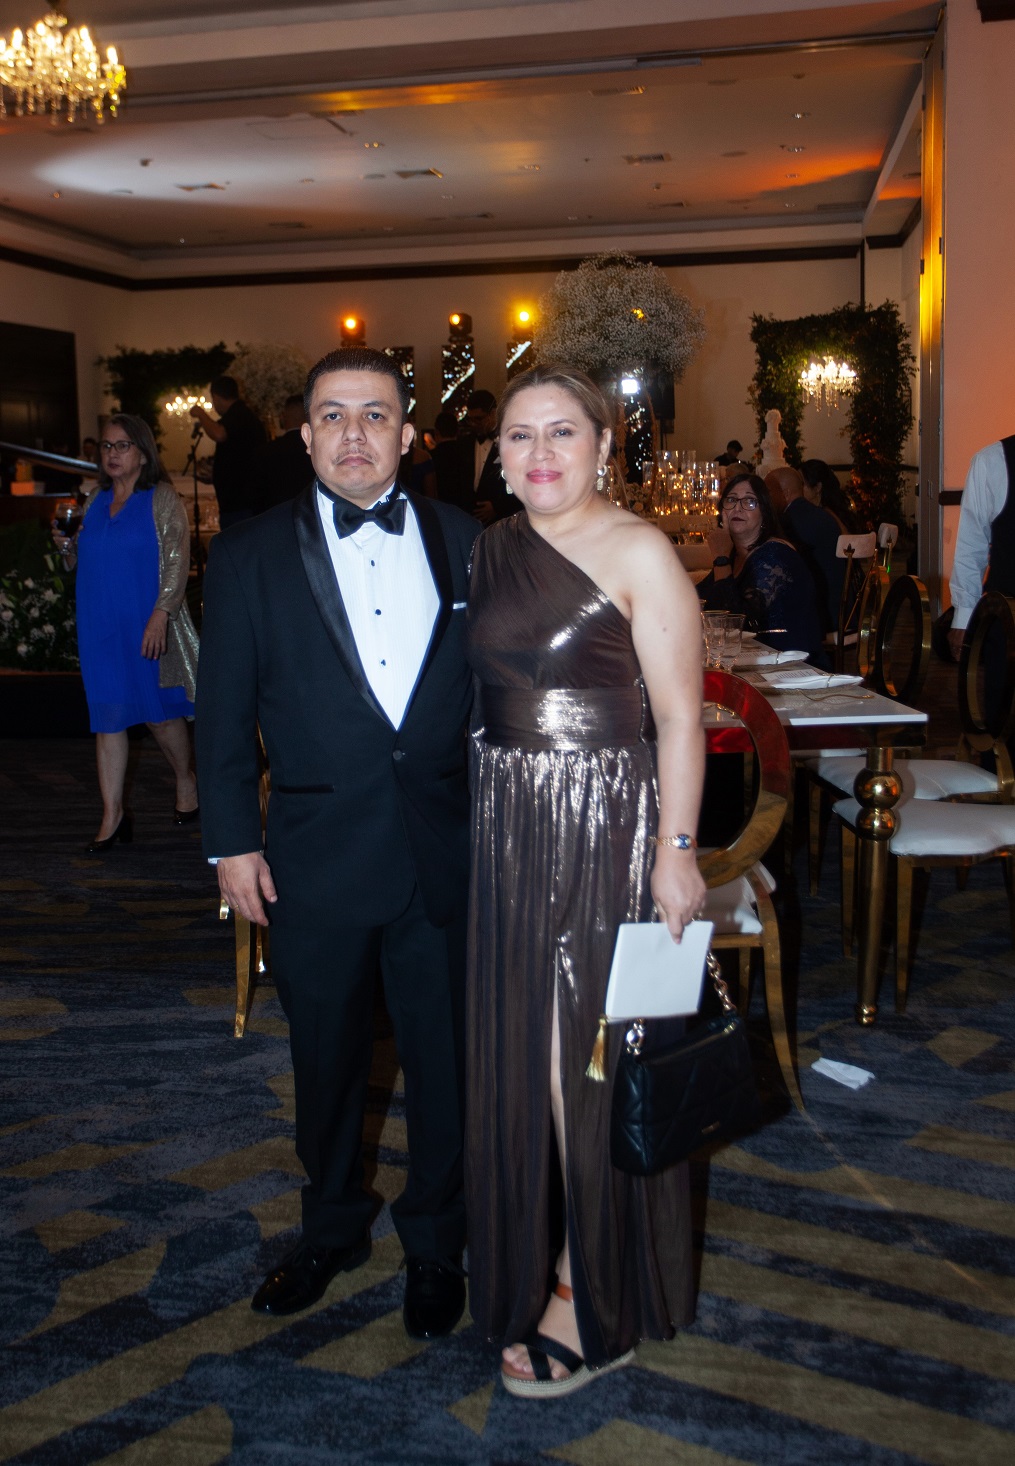 La boda de Sonia Pineda y Ángel Vargas: Una noche soñada que quisieran repetir